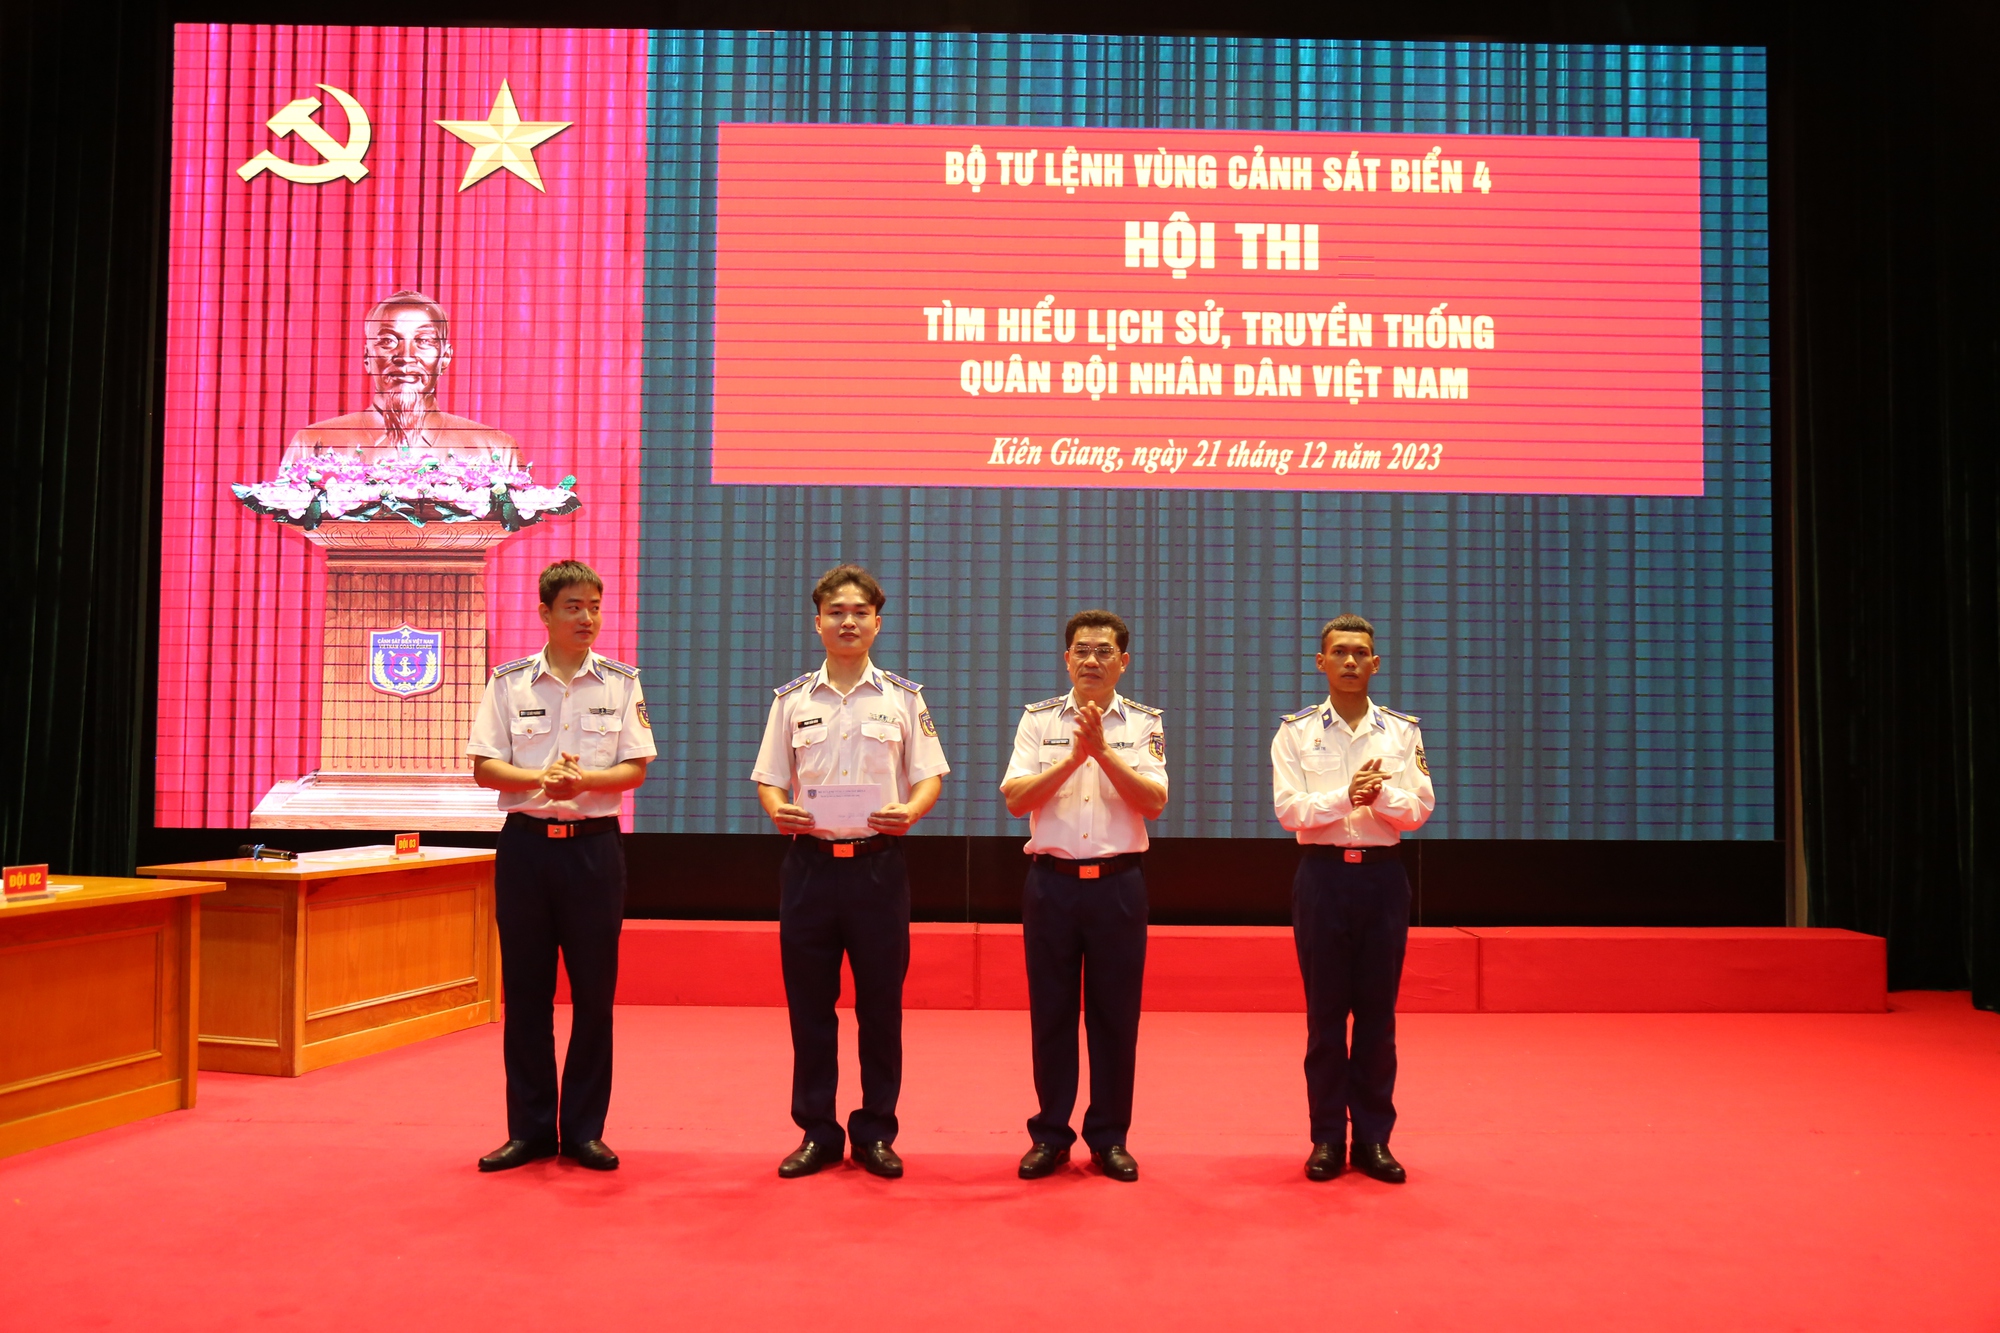 Vùng Cảnh sát biển 4 tổ chức nhiều hoạt động chào mừng ngày 22-12- Ảnh 7.